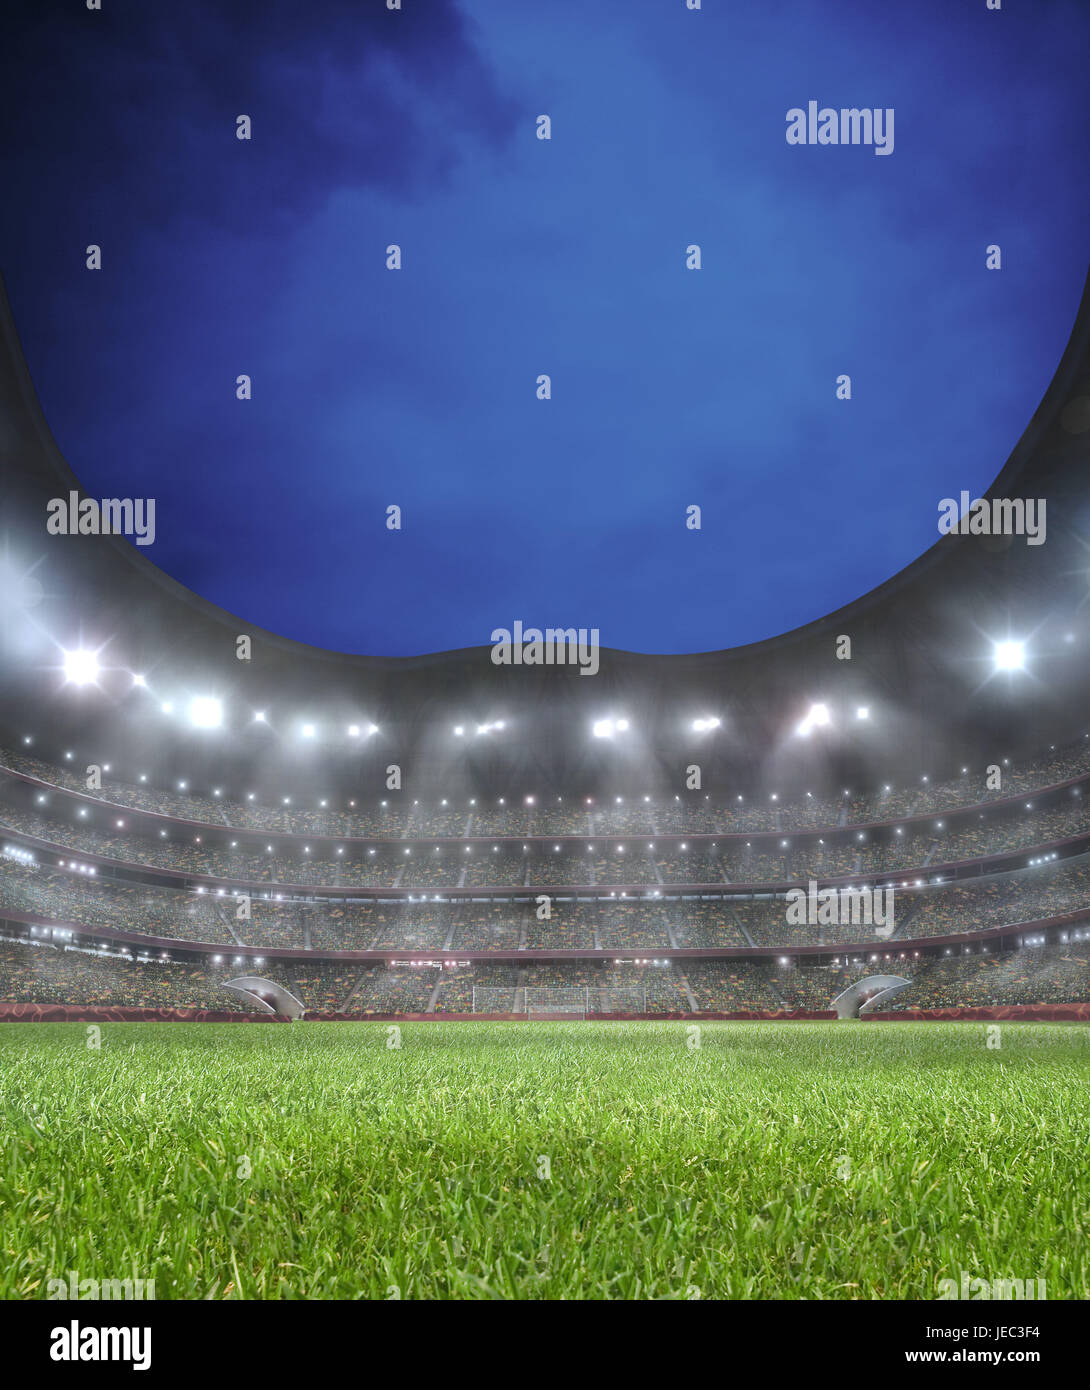 Football stadium, turf, illuminateds, advertisement, spectator's stand, Stock Photo